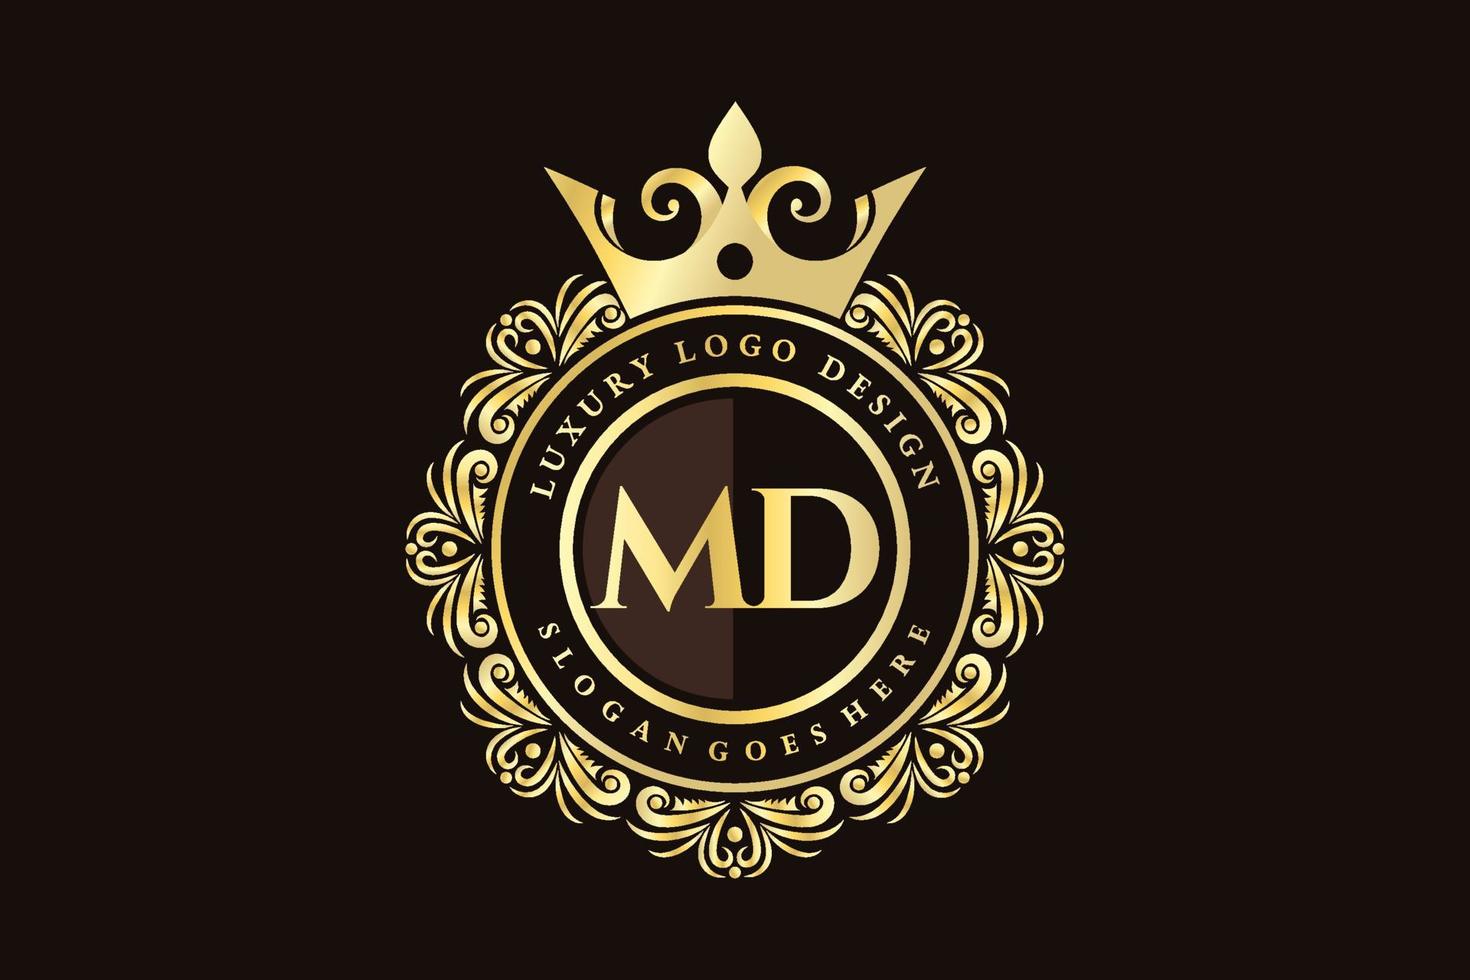 md anfangsbuchstabe gold kalligrafisch feminin floral handgezeichnet heraldisch monogramm antik vintage stil luxus logo design premium vektor